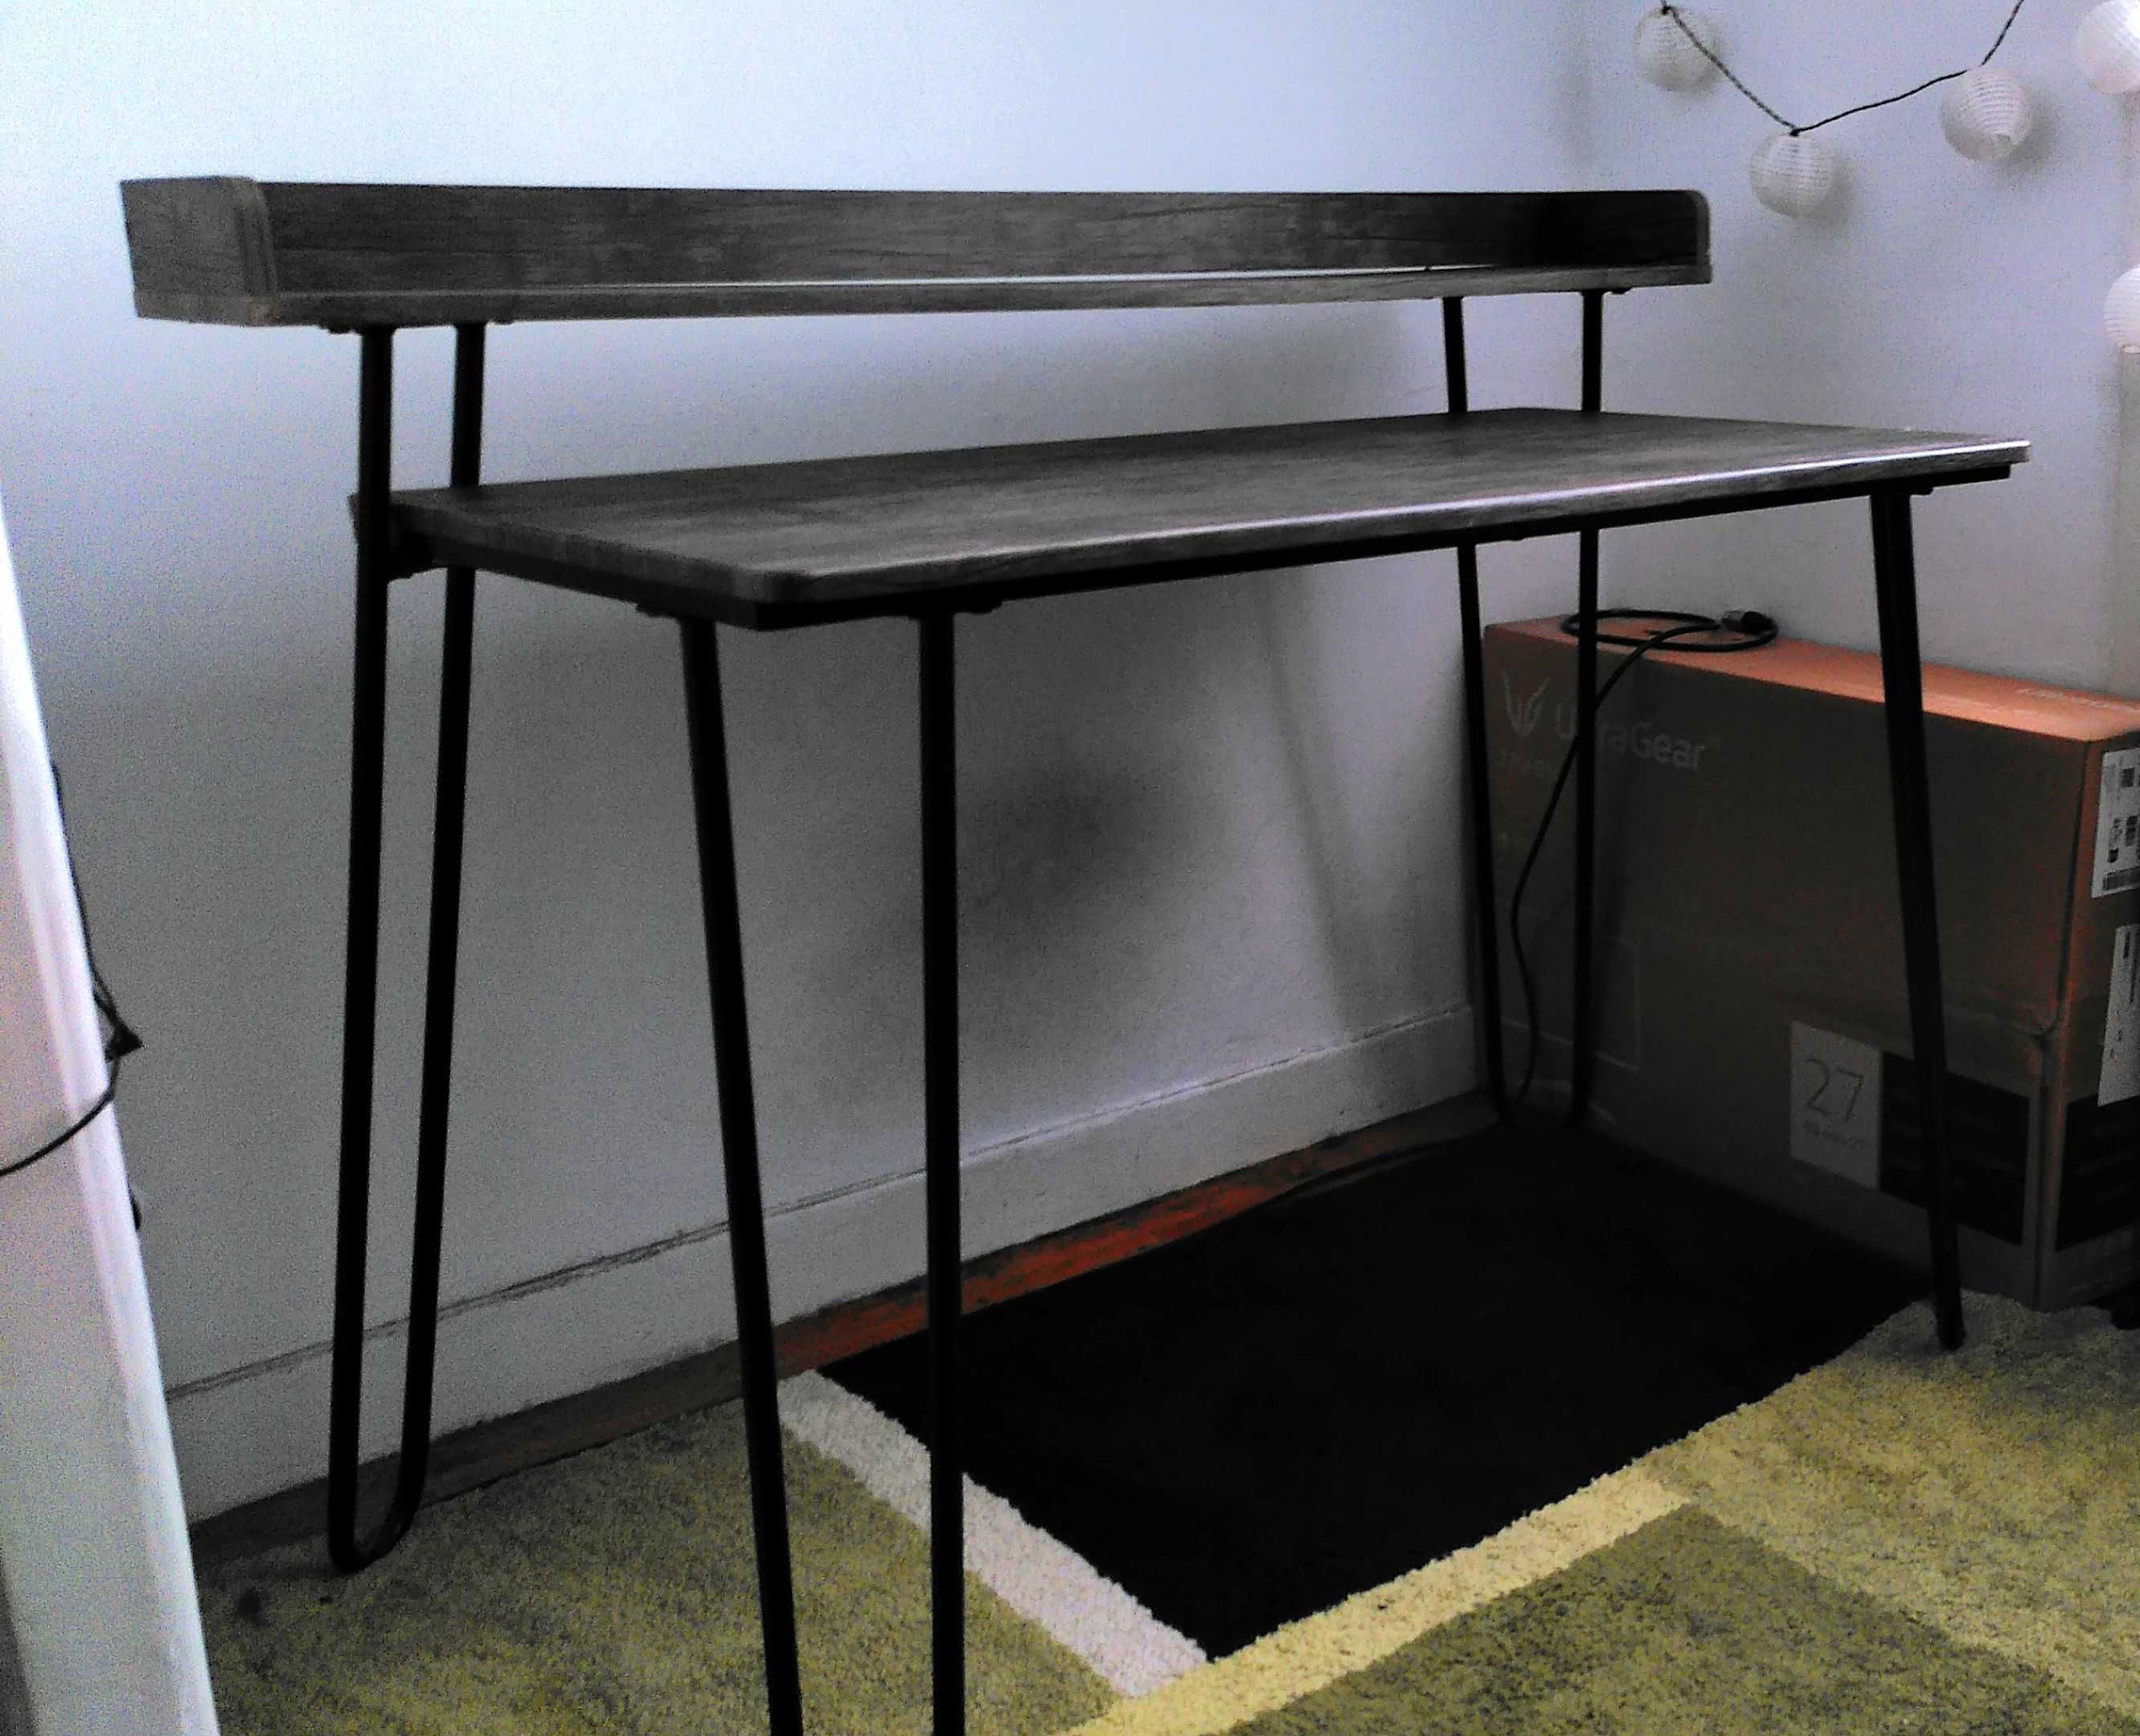 Work desk for sale